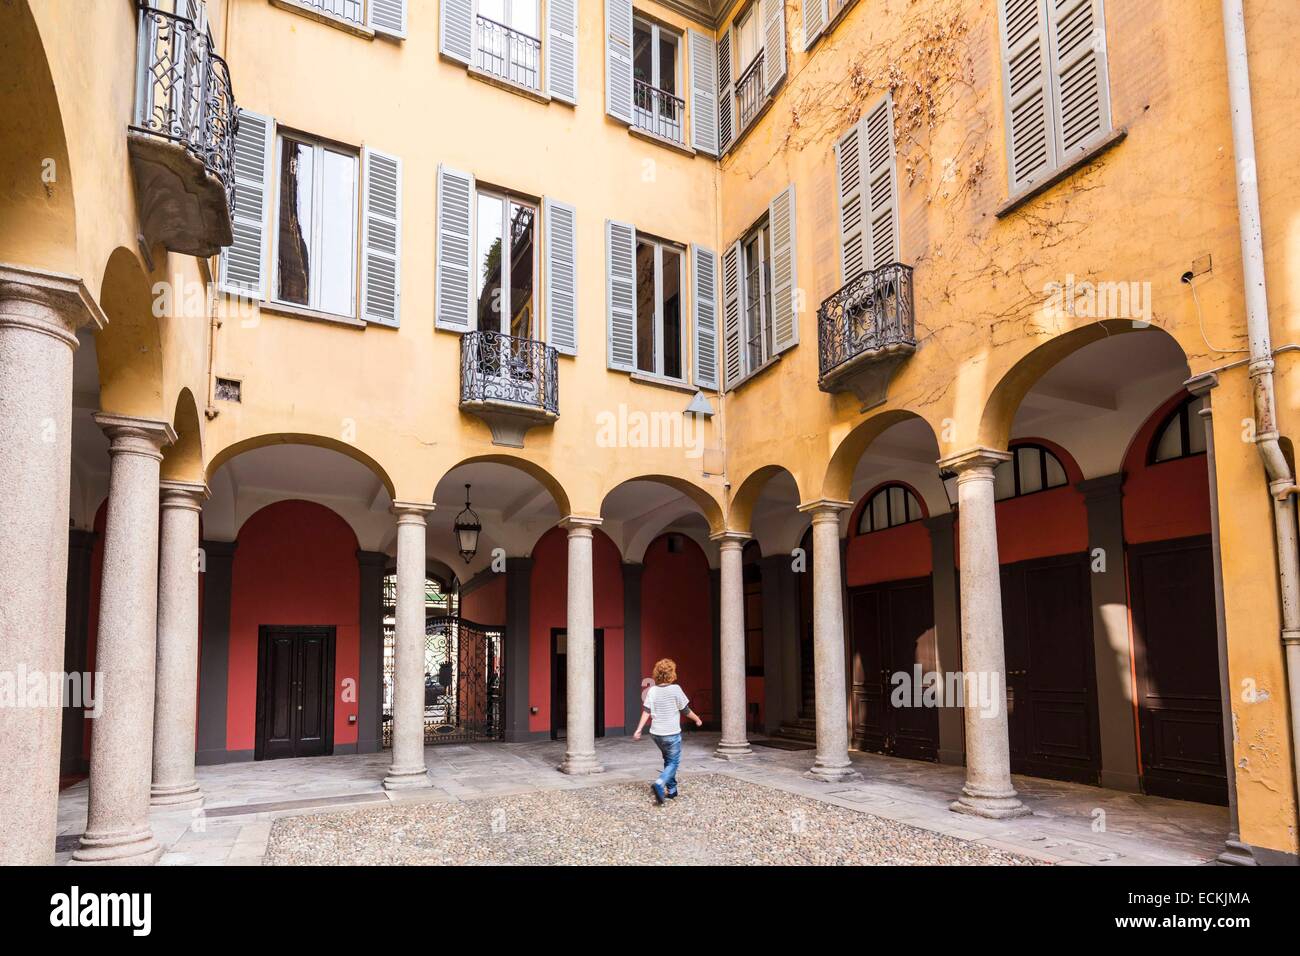 Italy, Lombardy, Milan, inner courtyard via Borgonuovo street Stock Photo